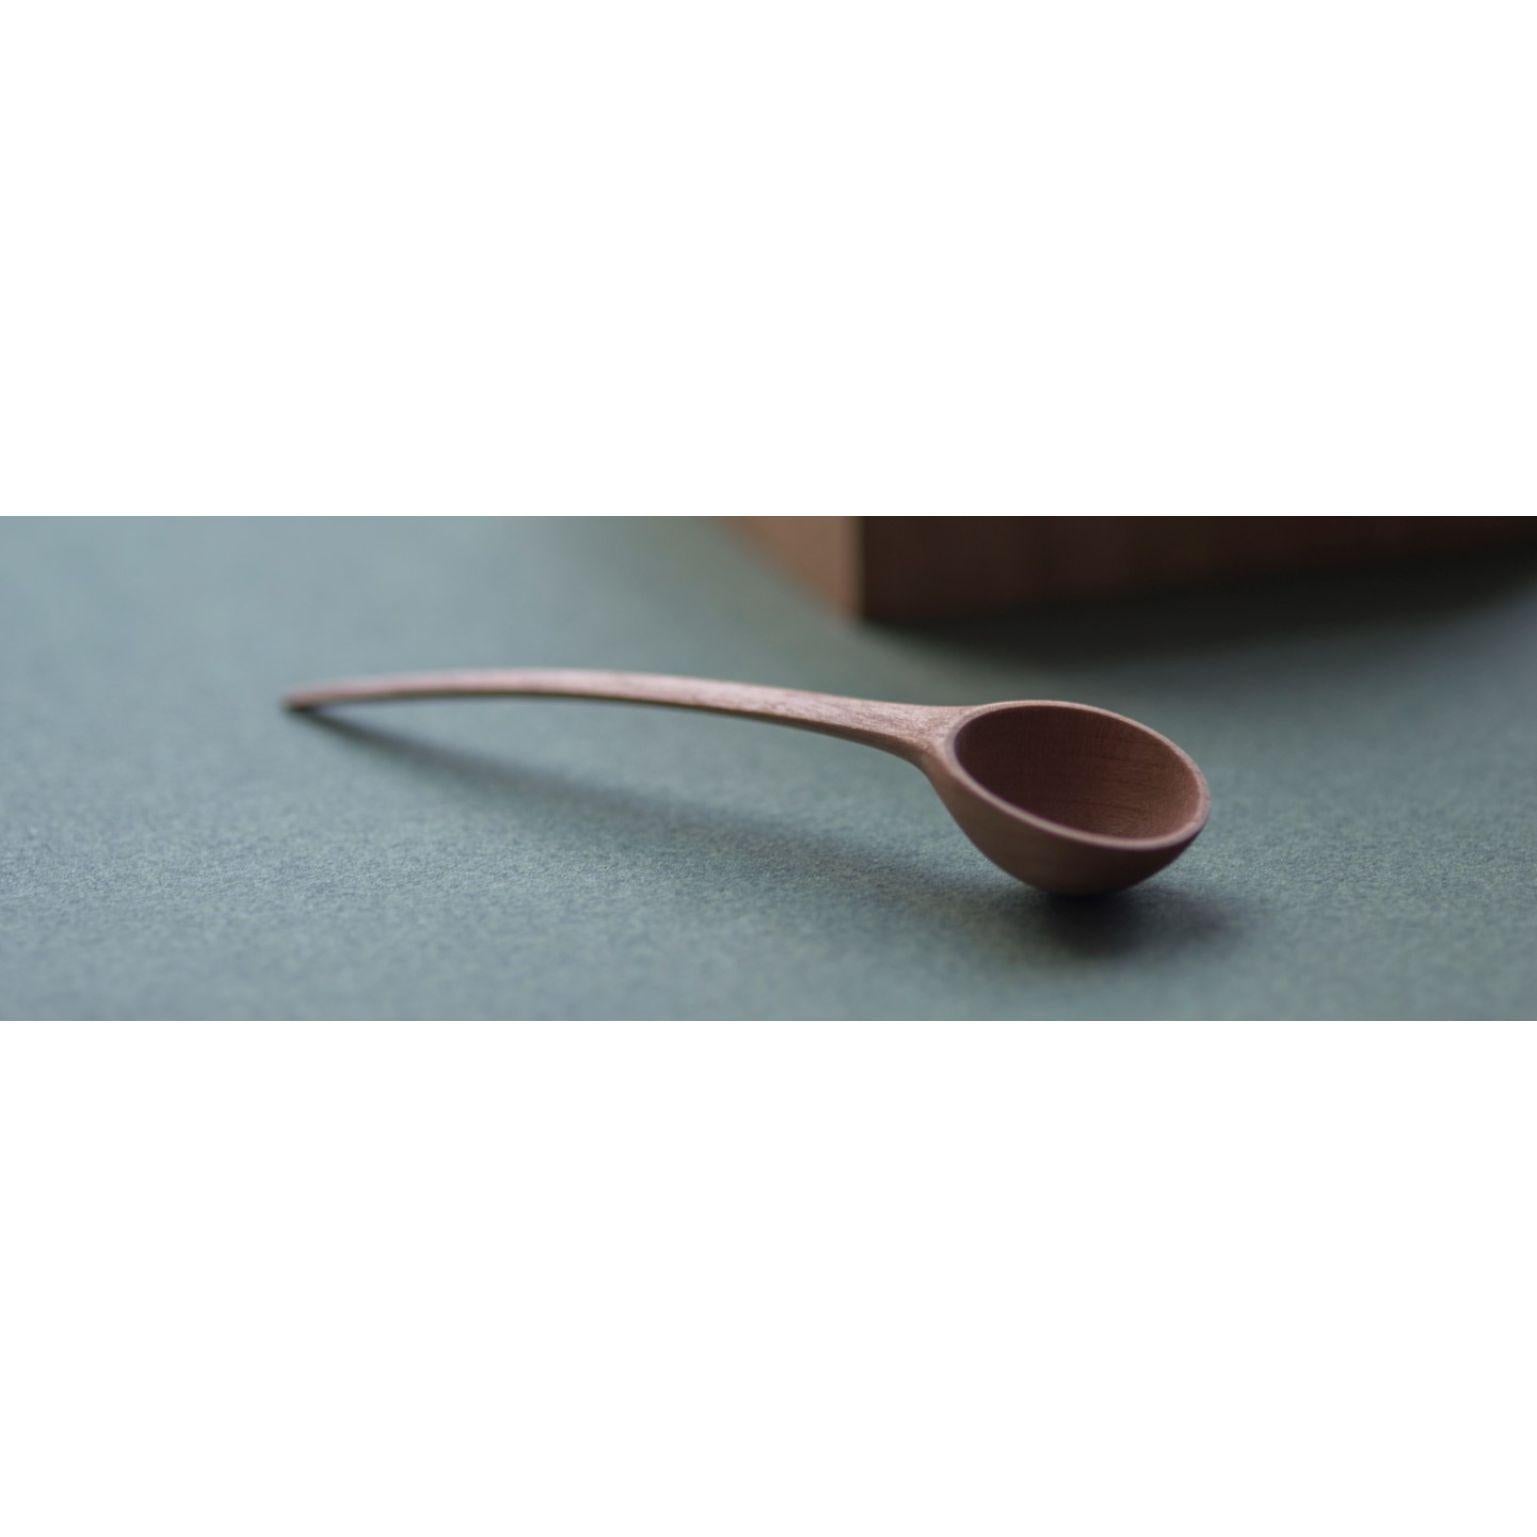 Hand-Carved Pisara Spoon, Medium by Antrei Hartikainen